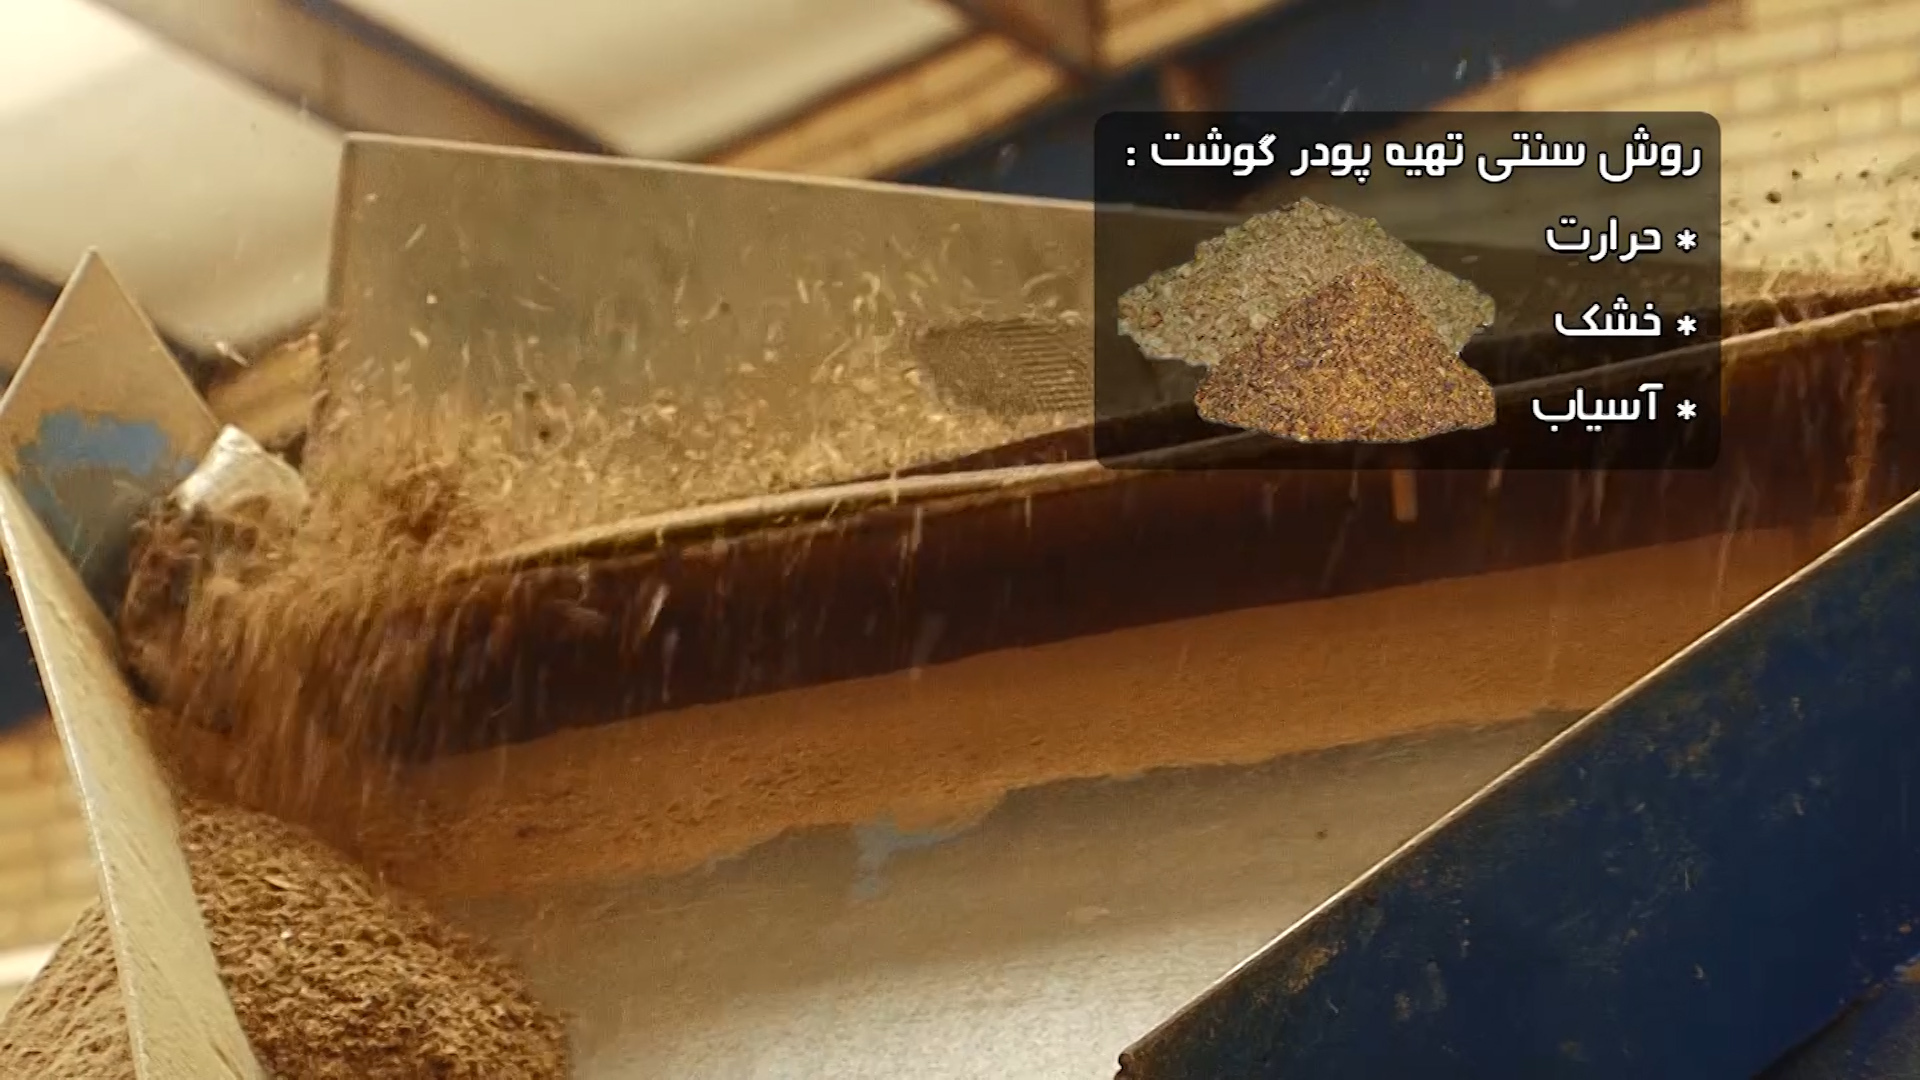 استفاده از پودر گوشت اصفهان در صنایع پرورش دام و طیور آسیایی ها